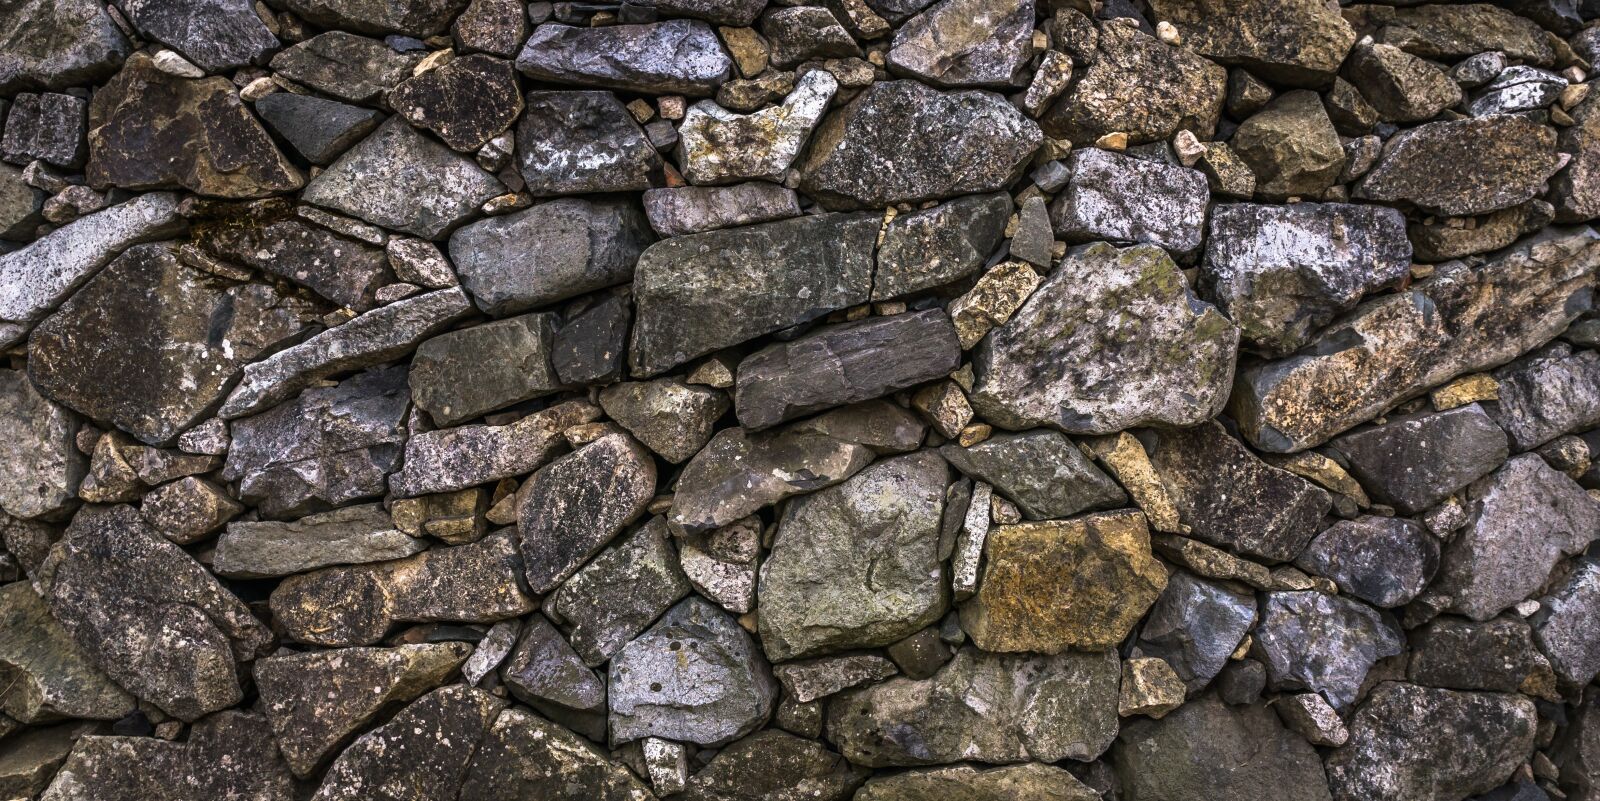 Sony E 30mm F3.5 Macro sample photo. Stone, stone wall, texture photography